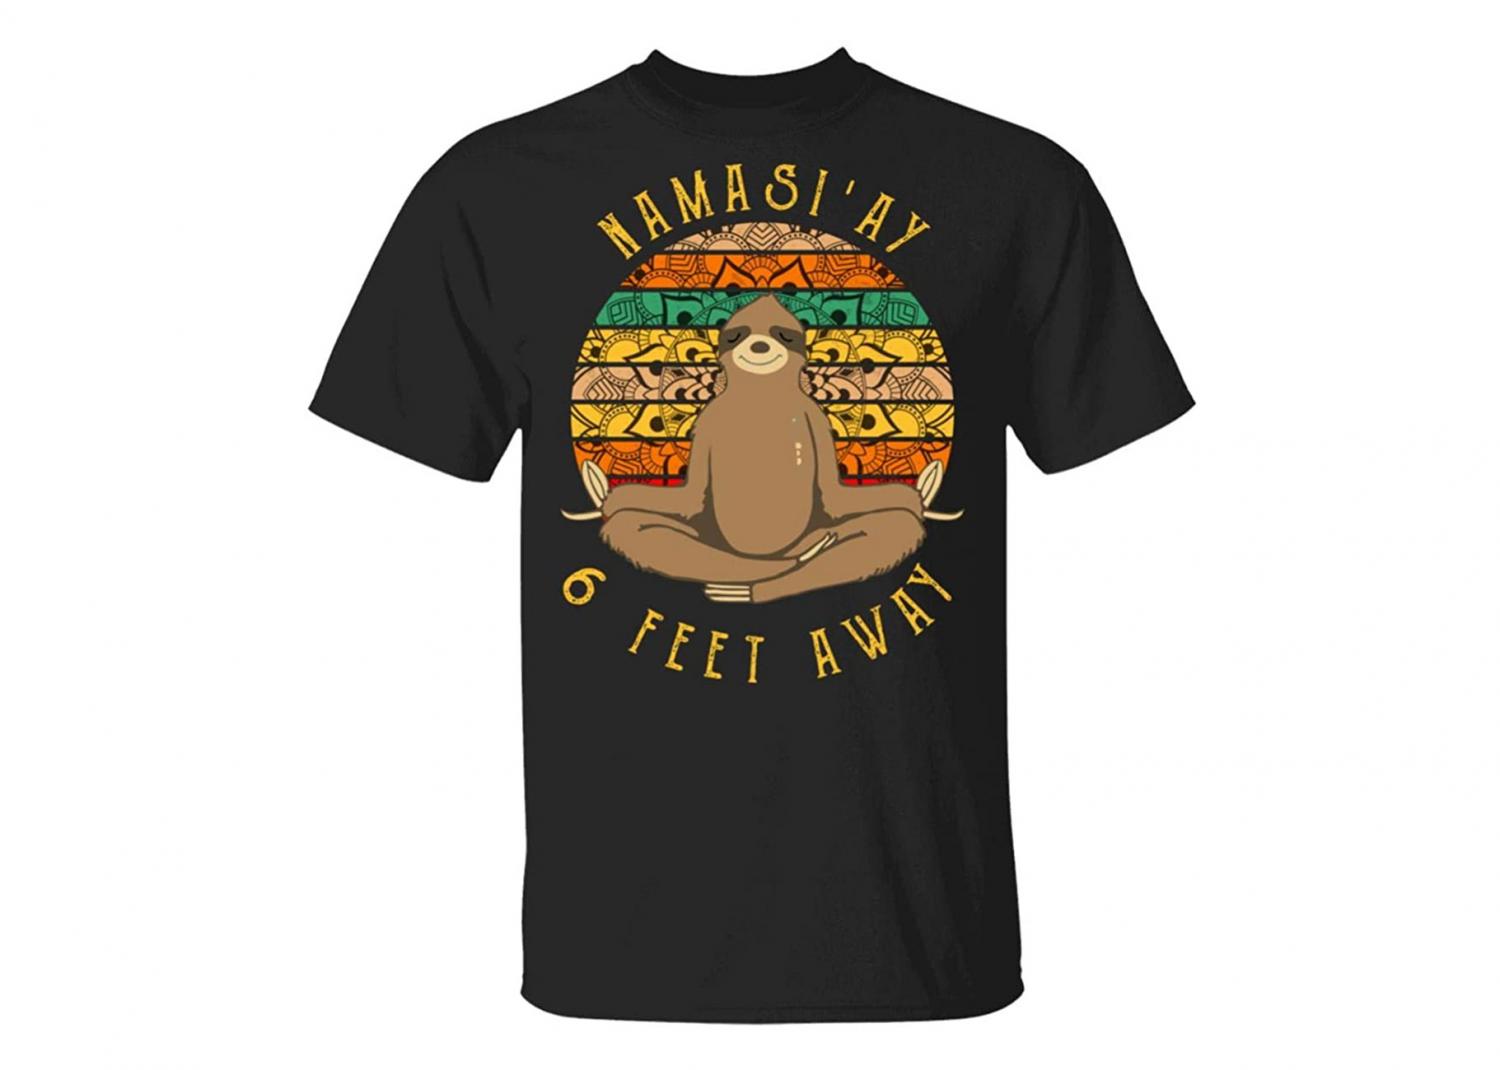 Namaste 6 Feet Away Sloth Shirt - Funny social distancing shirt - Namastay Sloth T-Shirt